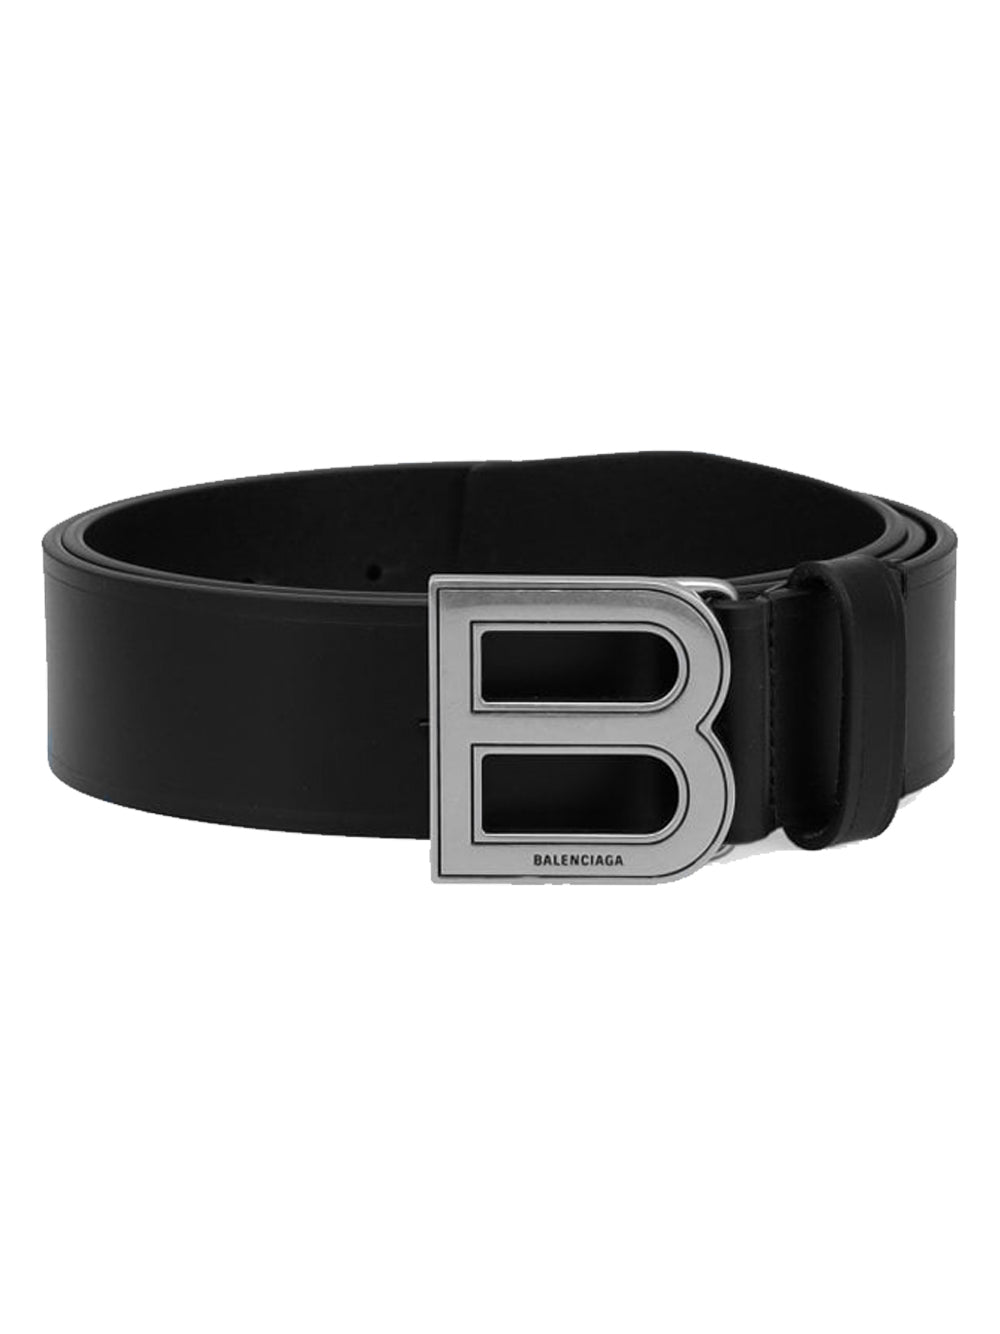 BALENCIAGA B Large Buckle Belt Black - MAISONDEFASHION.COM